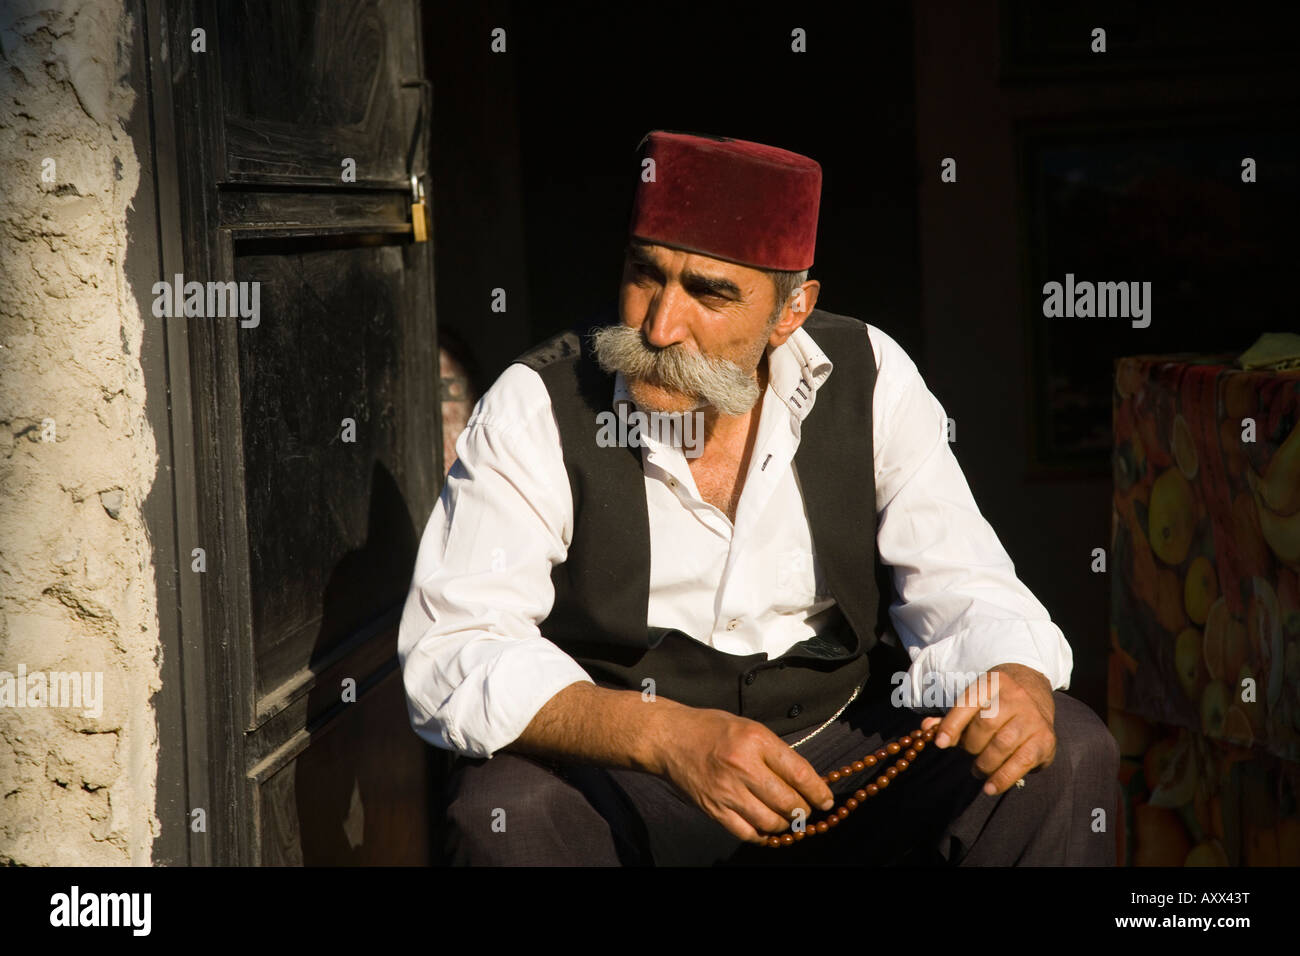 Fez turkish immagini e fotografie stock ad alta risoluzione - Alamy